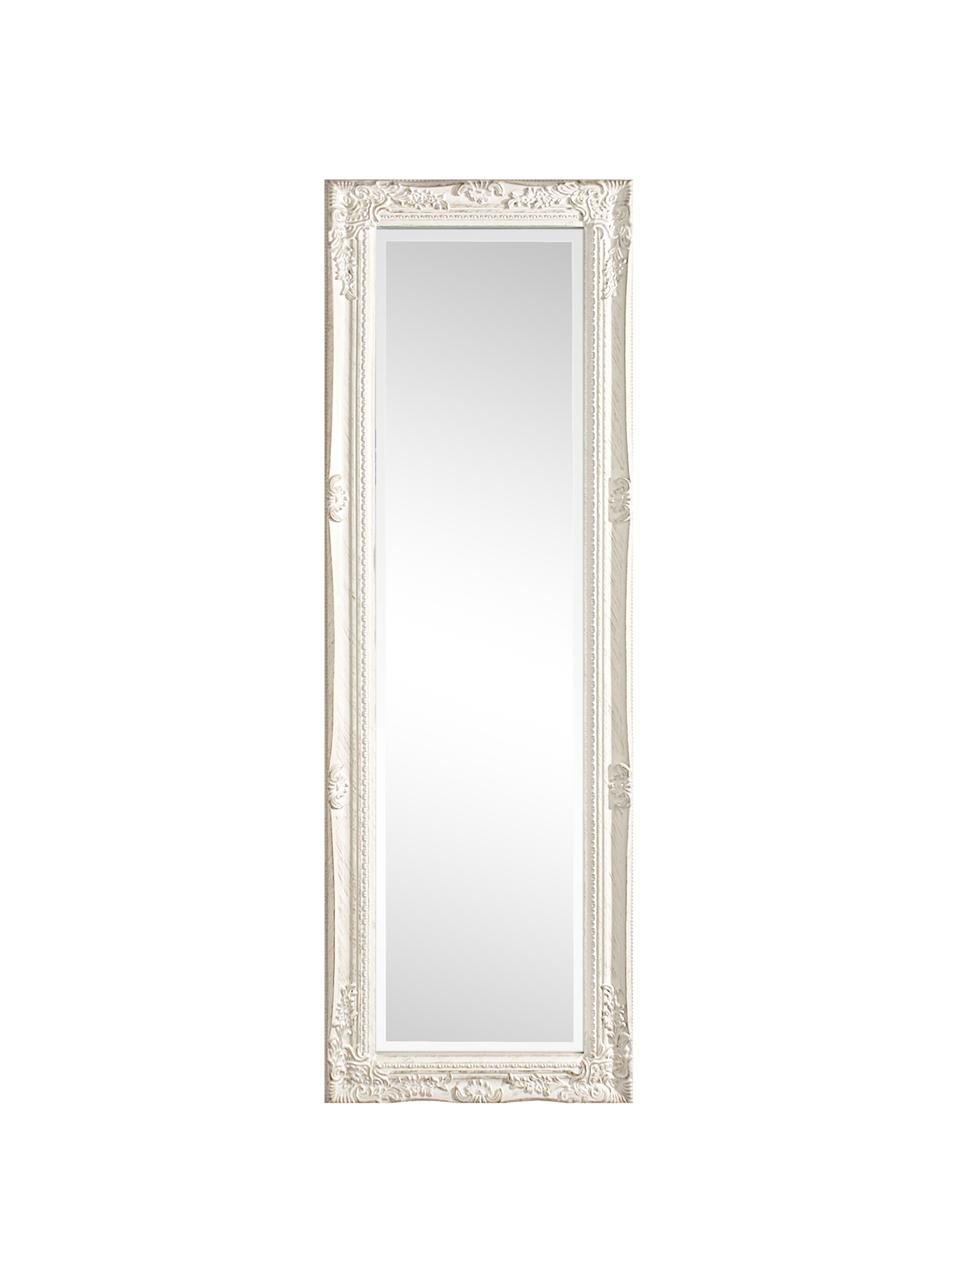 Eckiger Wandspiegel Miro mit weißem Paulowniaholzrahmen, Rahmen: Paulowniaholz, beschichte, Spiegelfläche: Spiegelglas, Weiß, B 42 x H 132 cm